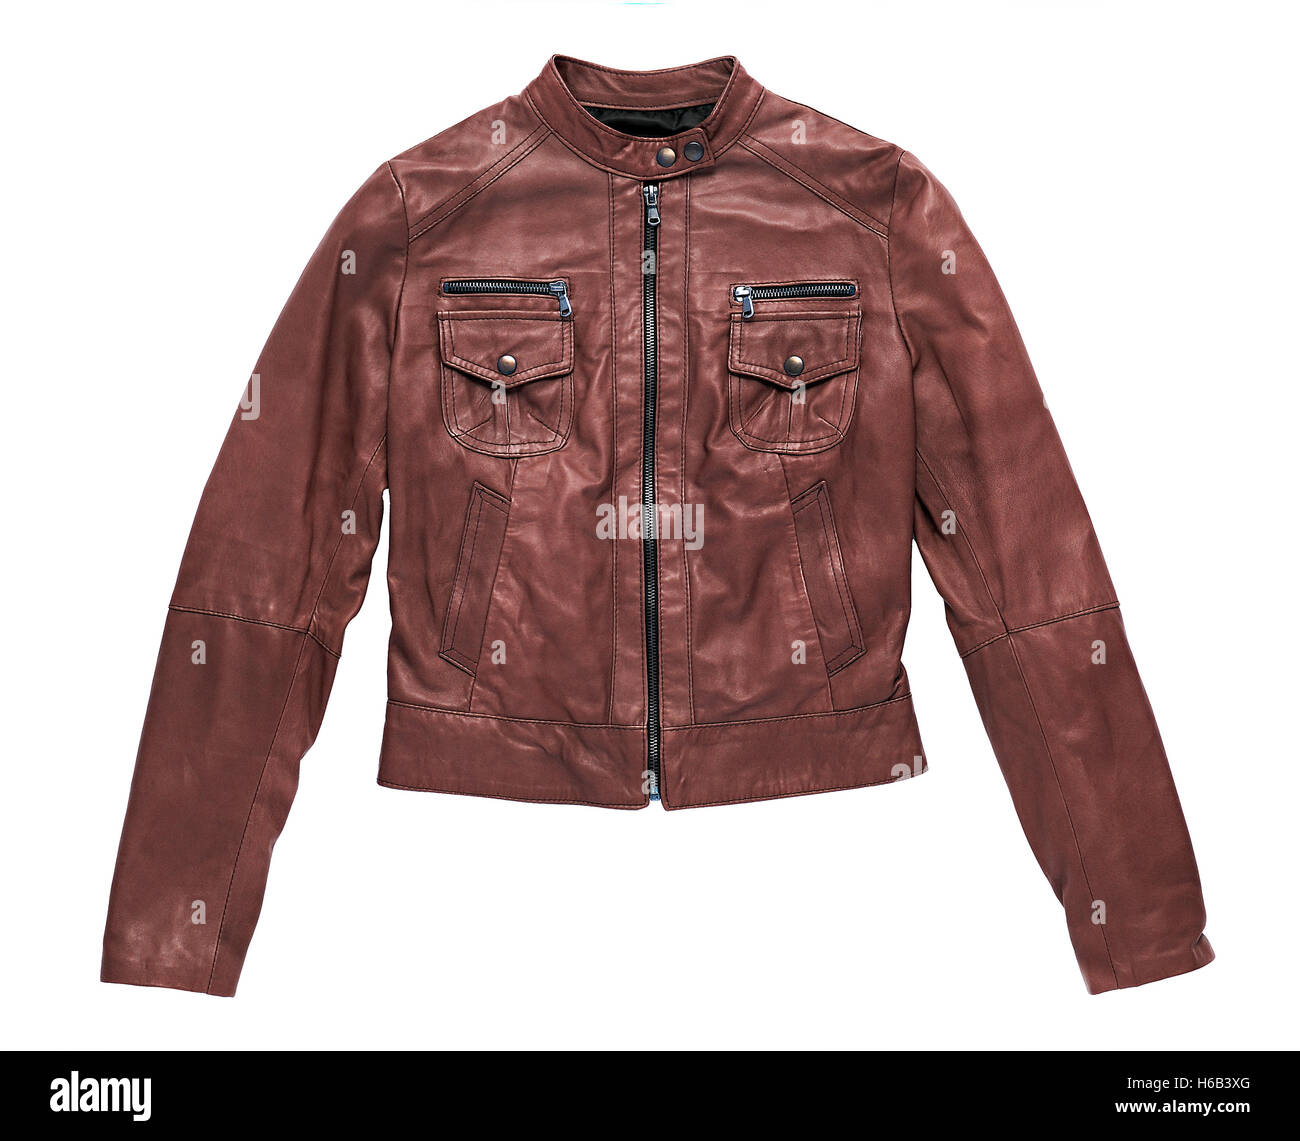 Aislados de cuero marrón rojo chaqueta con cremallera frontal cerrado y los brazos extendidos aparecen en blanco en un concepto de moda Foto de stock